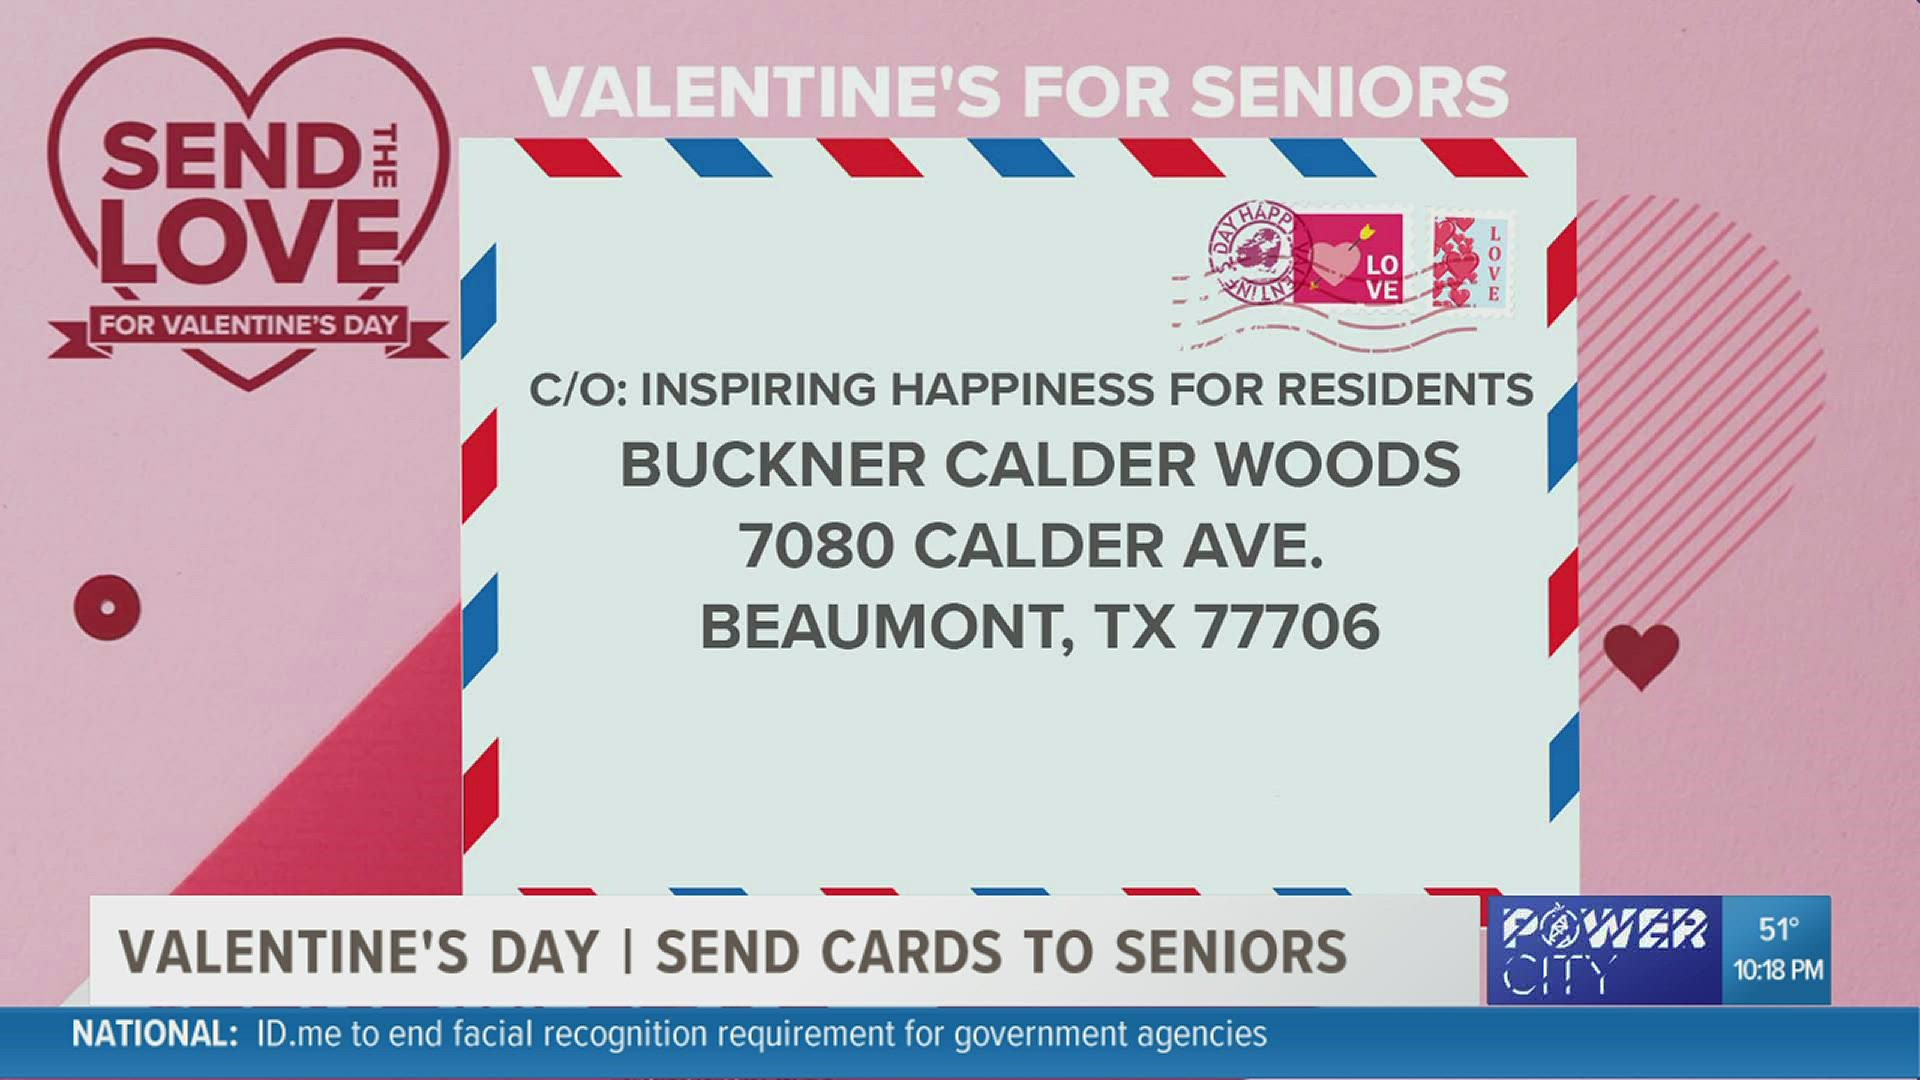 Buckner Calder Woods needs your help to spread the love.